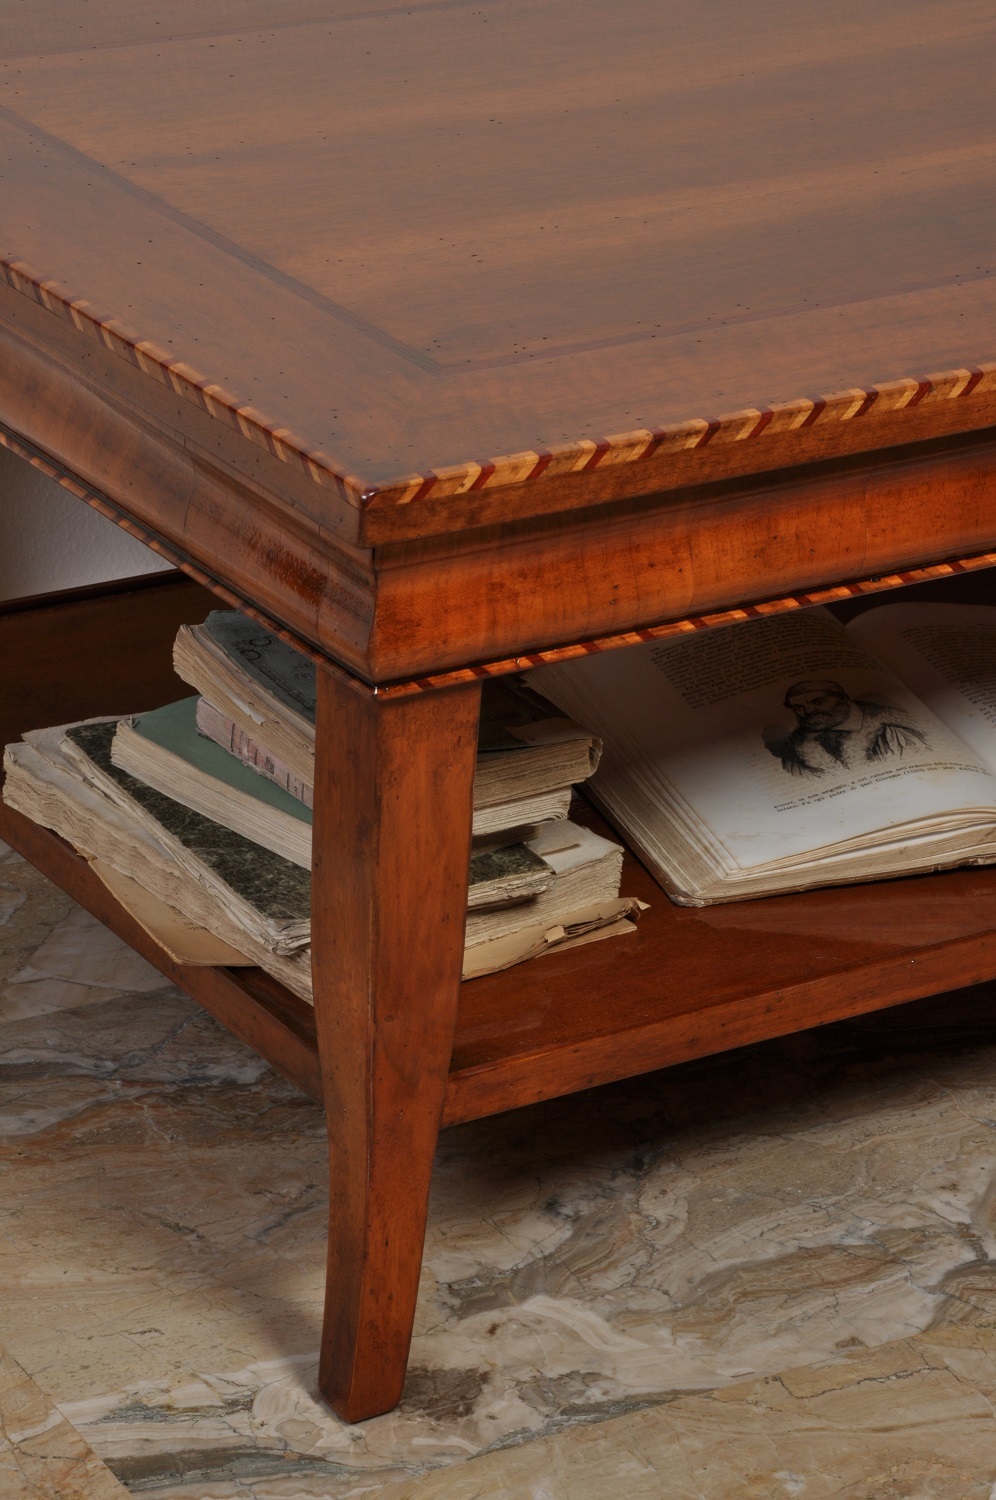 Tavolino da salotto di design in legno massello con ripiano in cristal –  Wanos Wood & Design